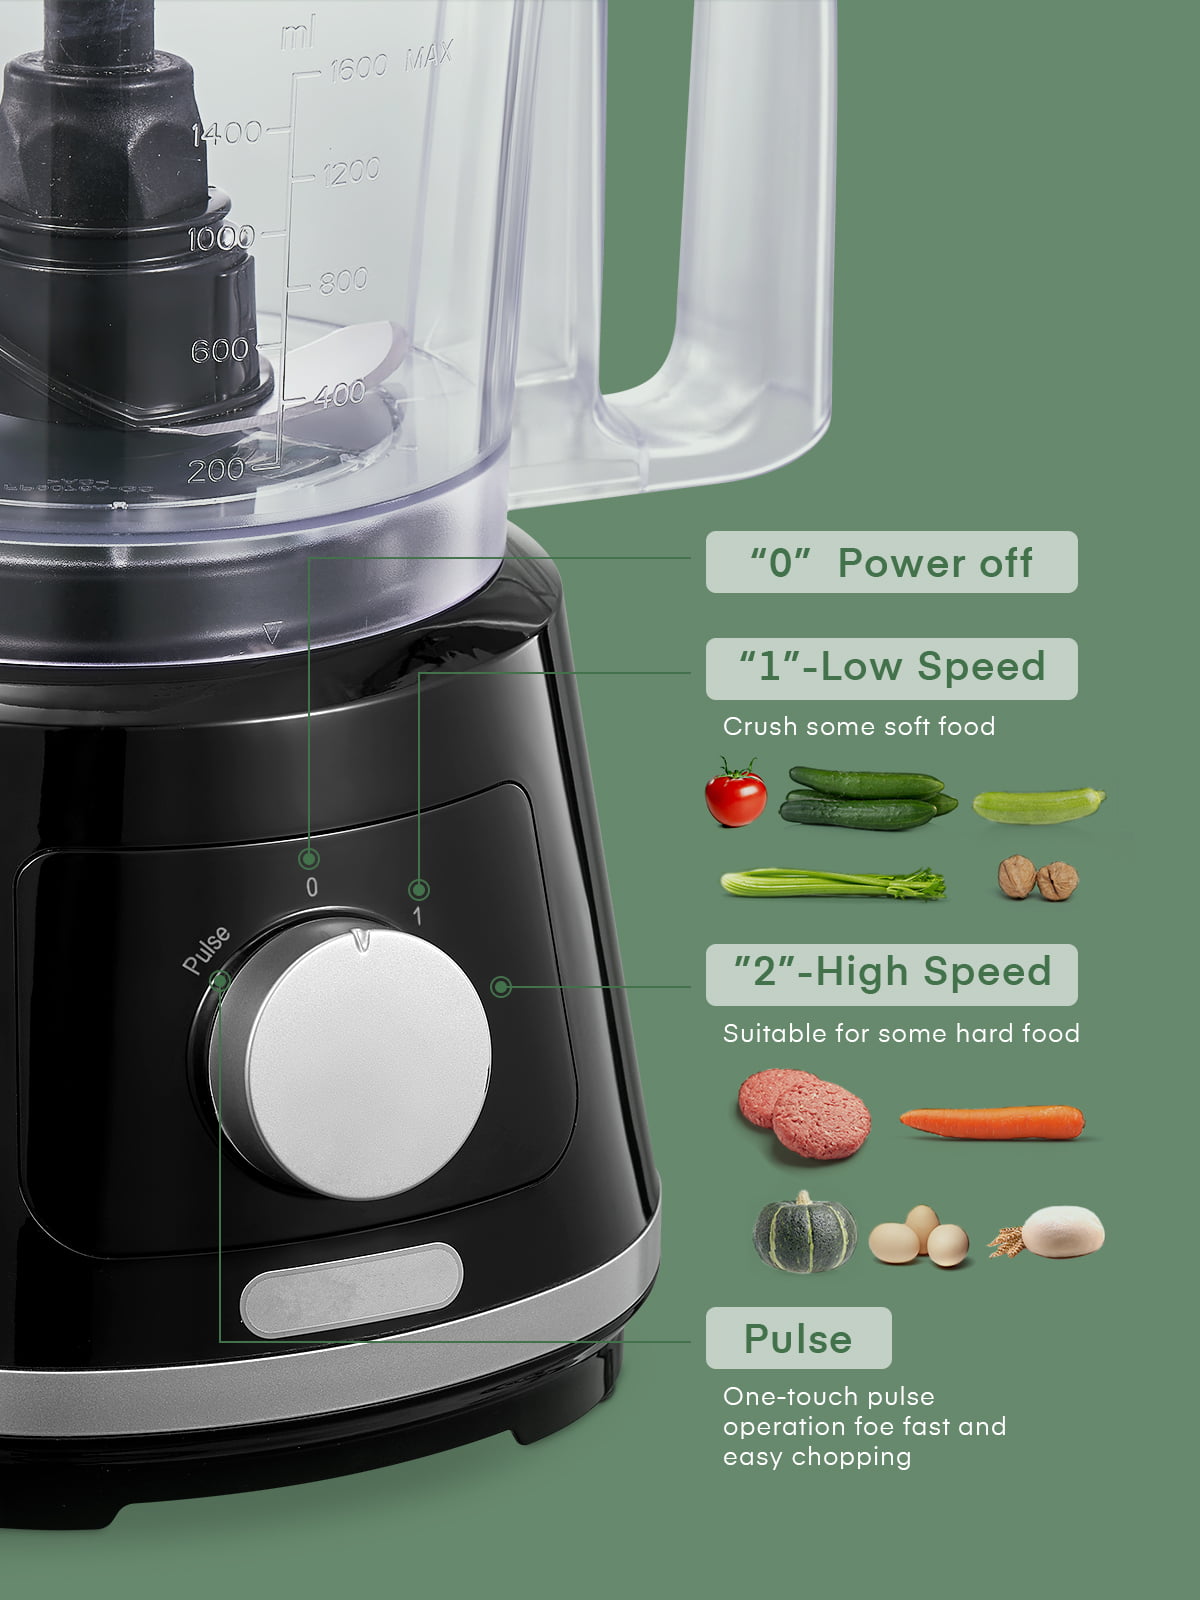 CYETUS 8-in-1 Large Digital 8-Cup Food Processor, Vegetable